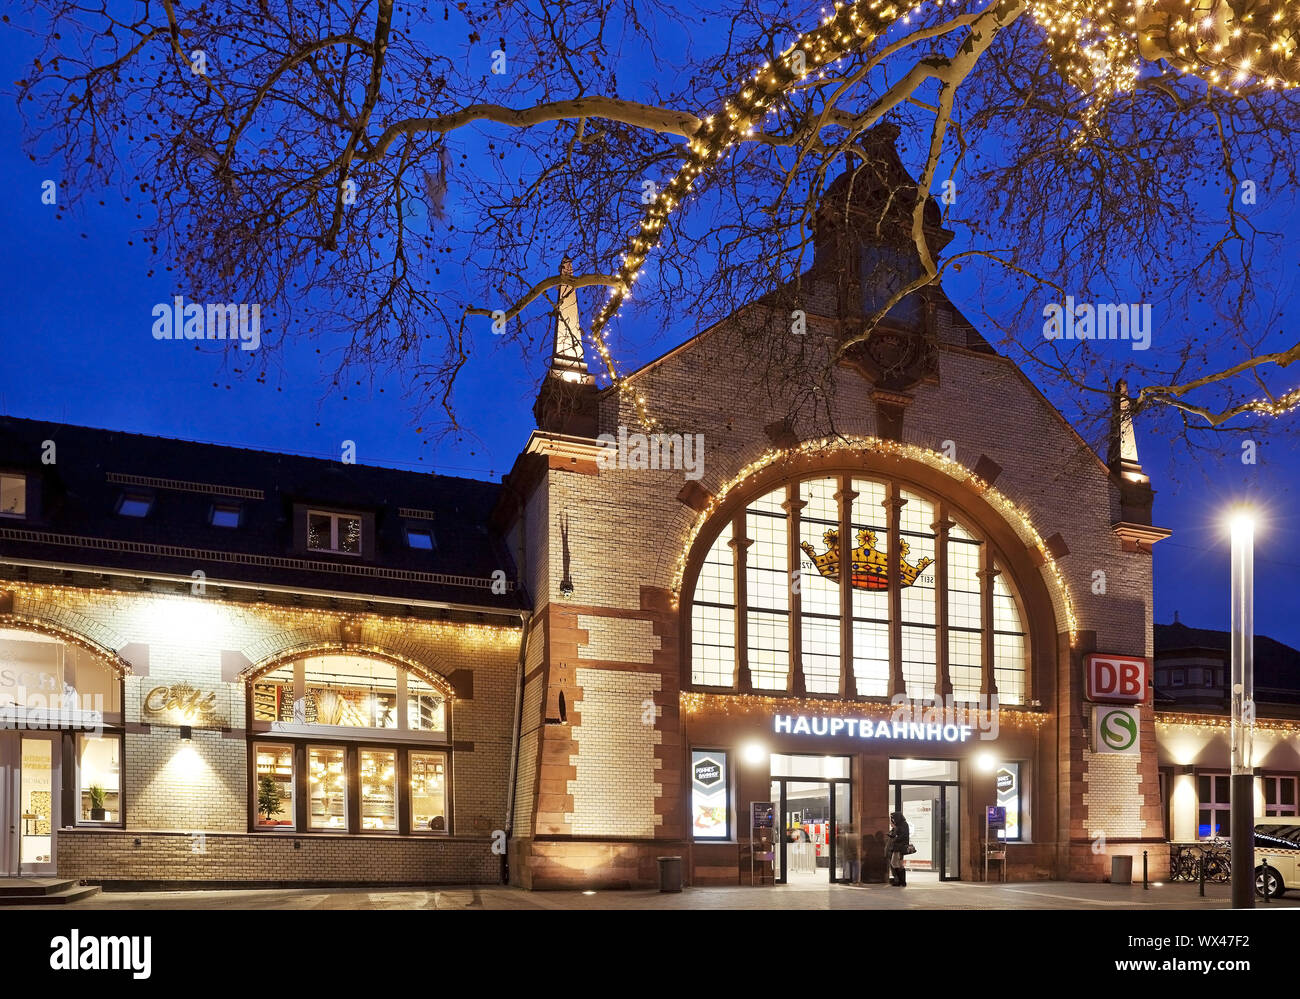 Stazione centrale con le luci di Natale in serata, Witten, zona della Ruhr, Germania, Europa Foto Stock